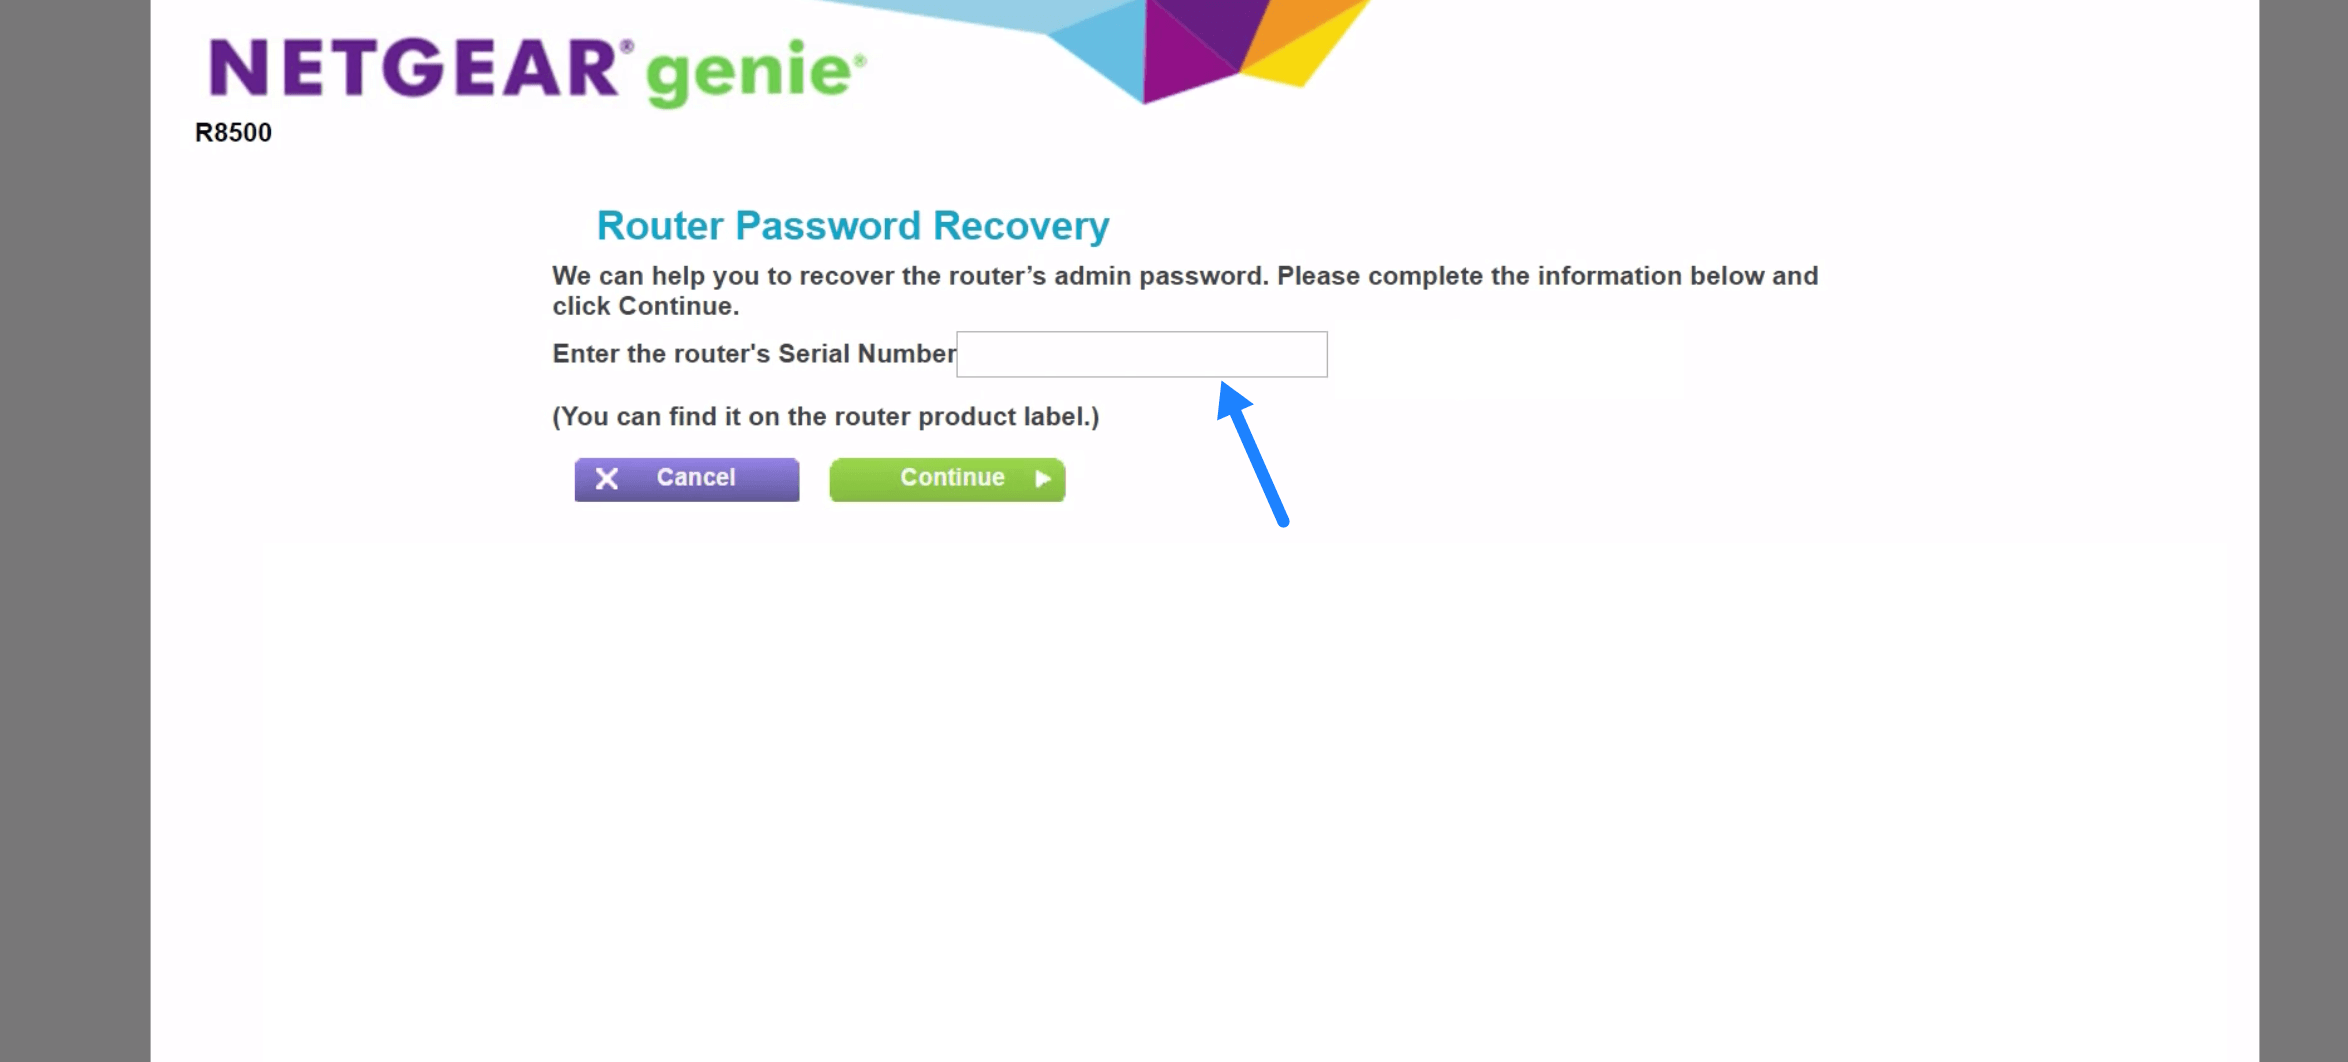 How to reset forgotten NETGEAR Router Password? - Router Login